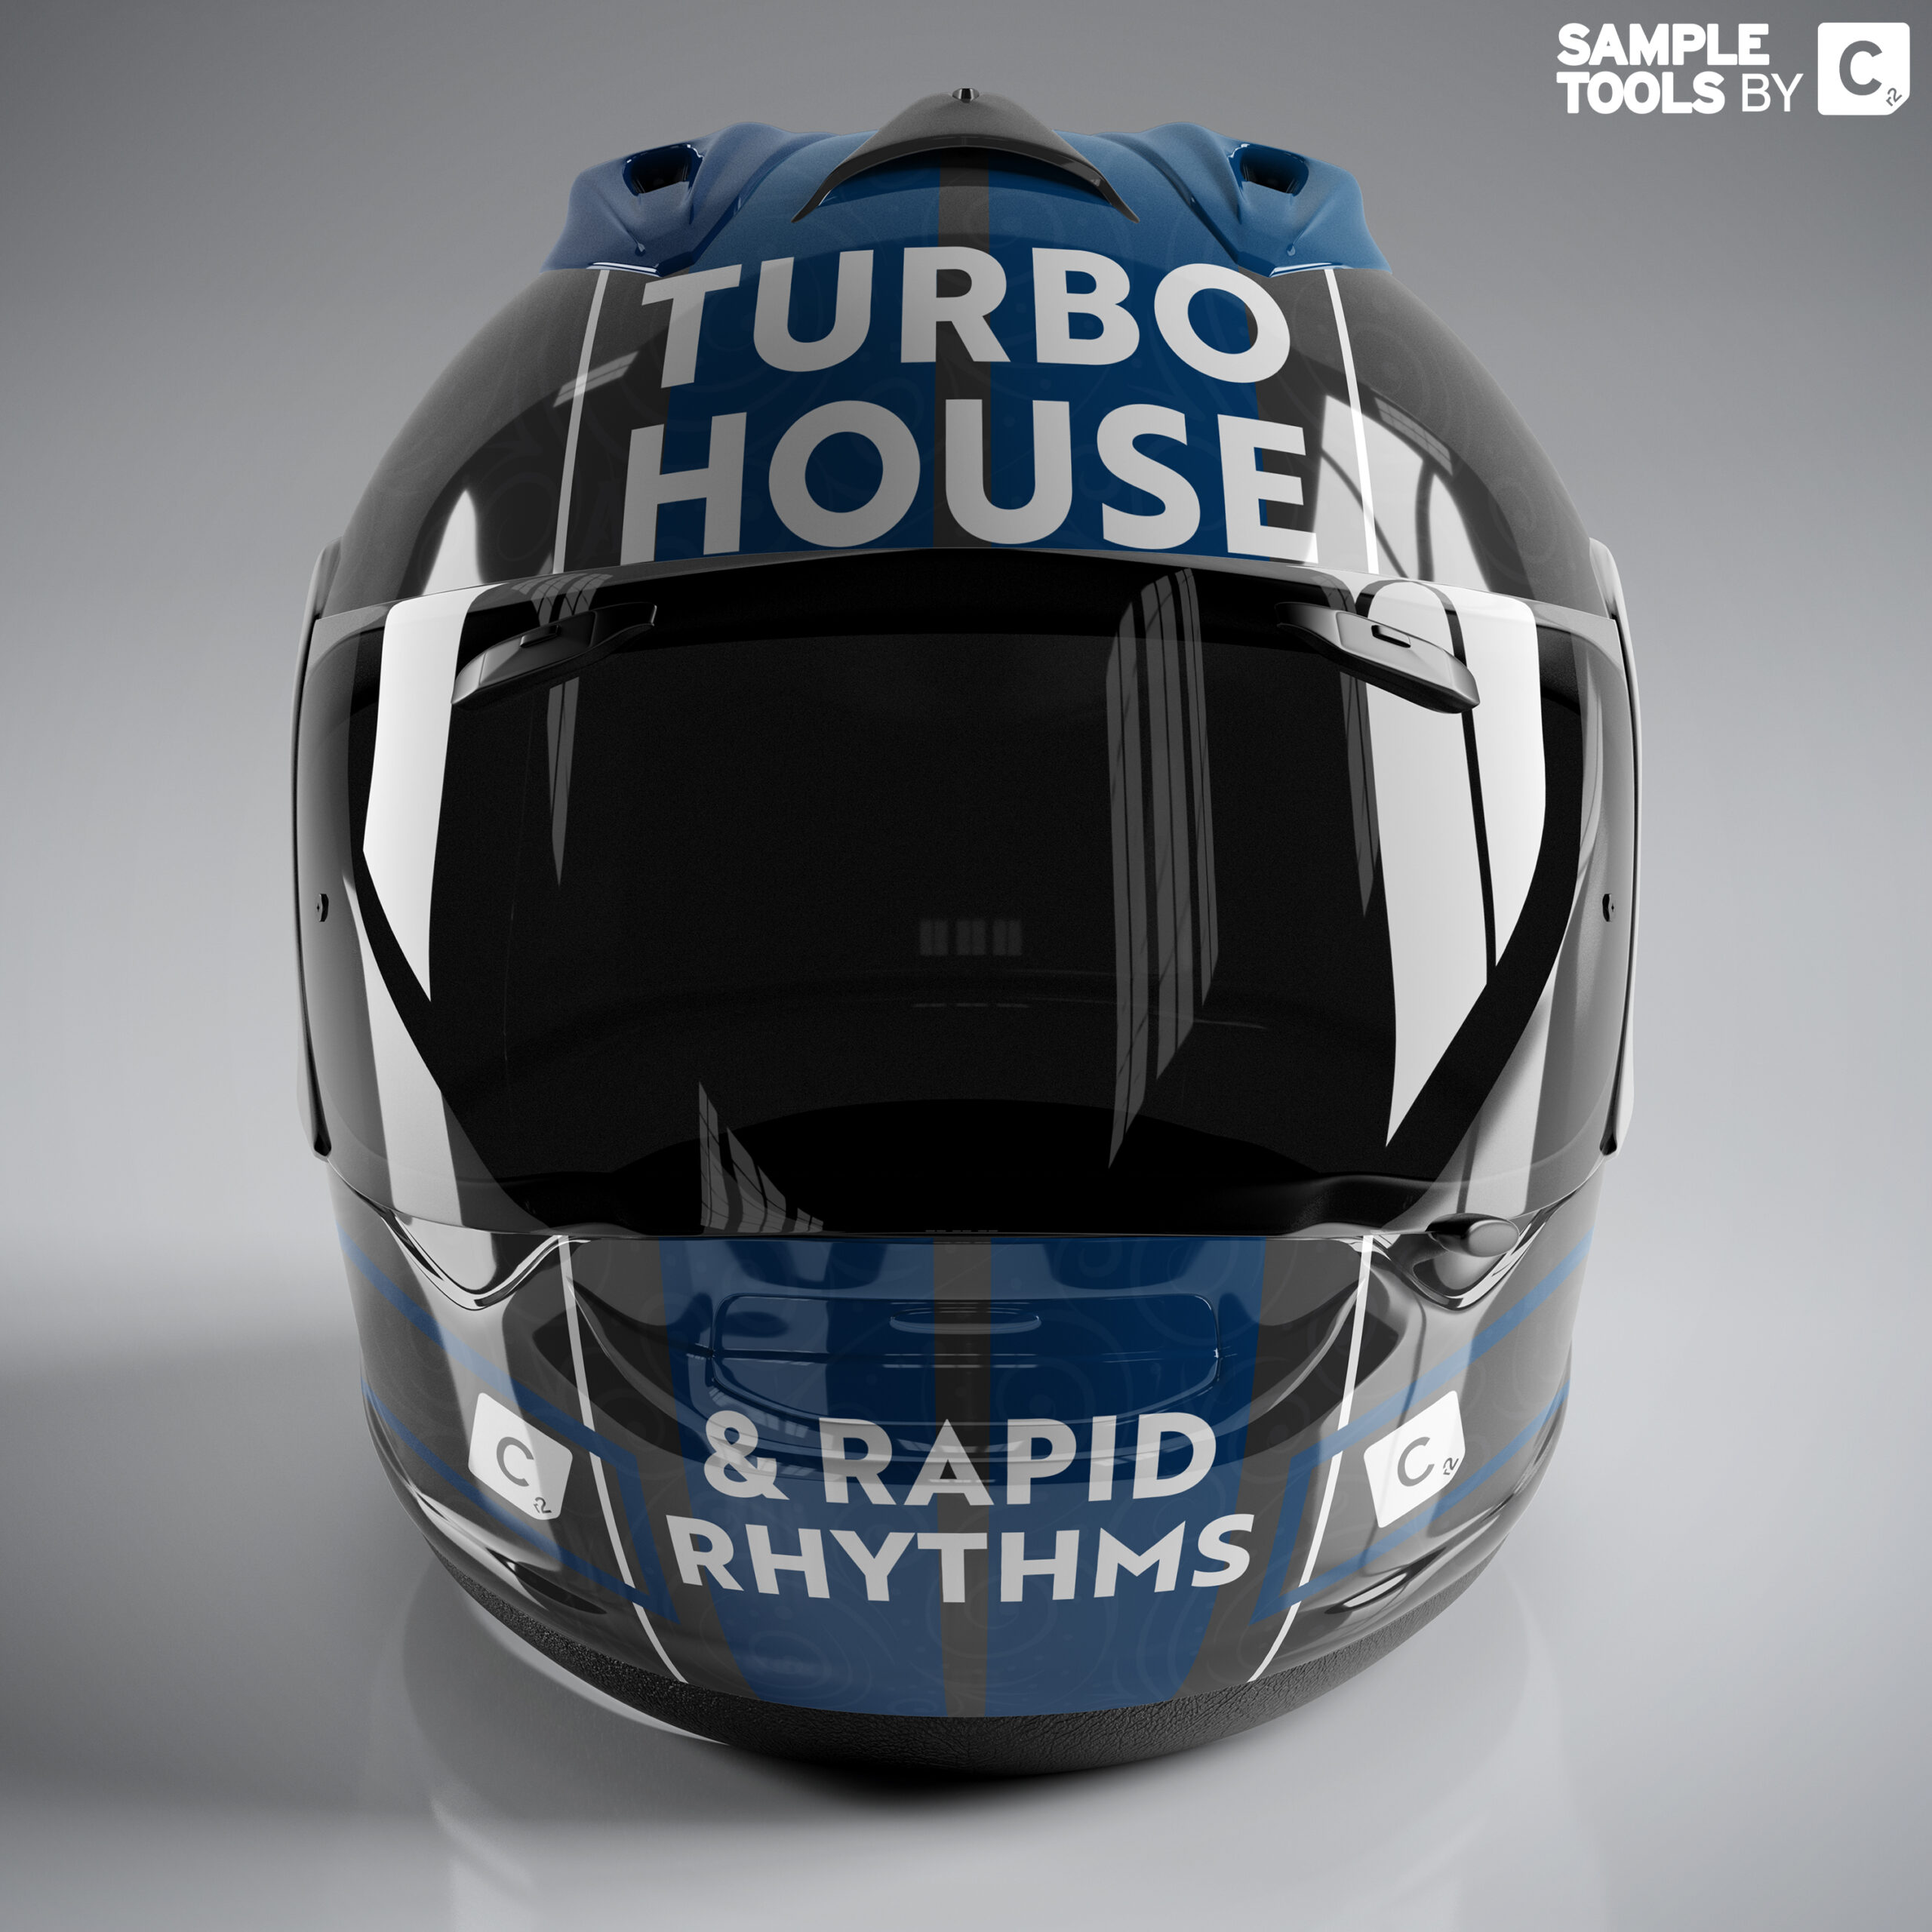 Turbo House & Rapid Rhythms